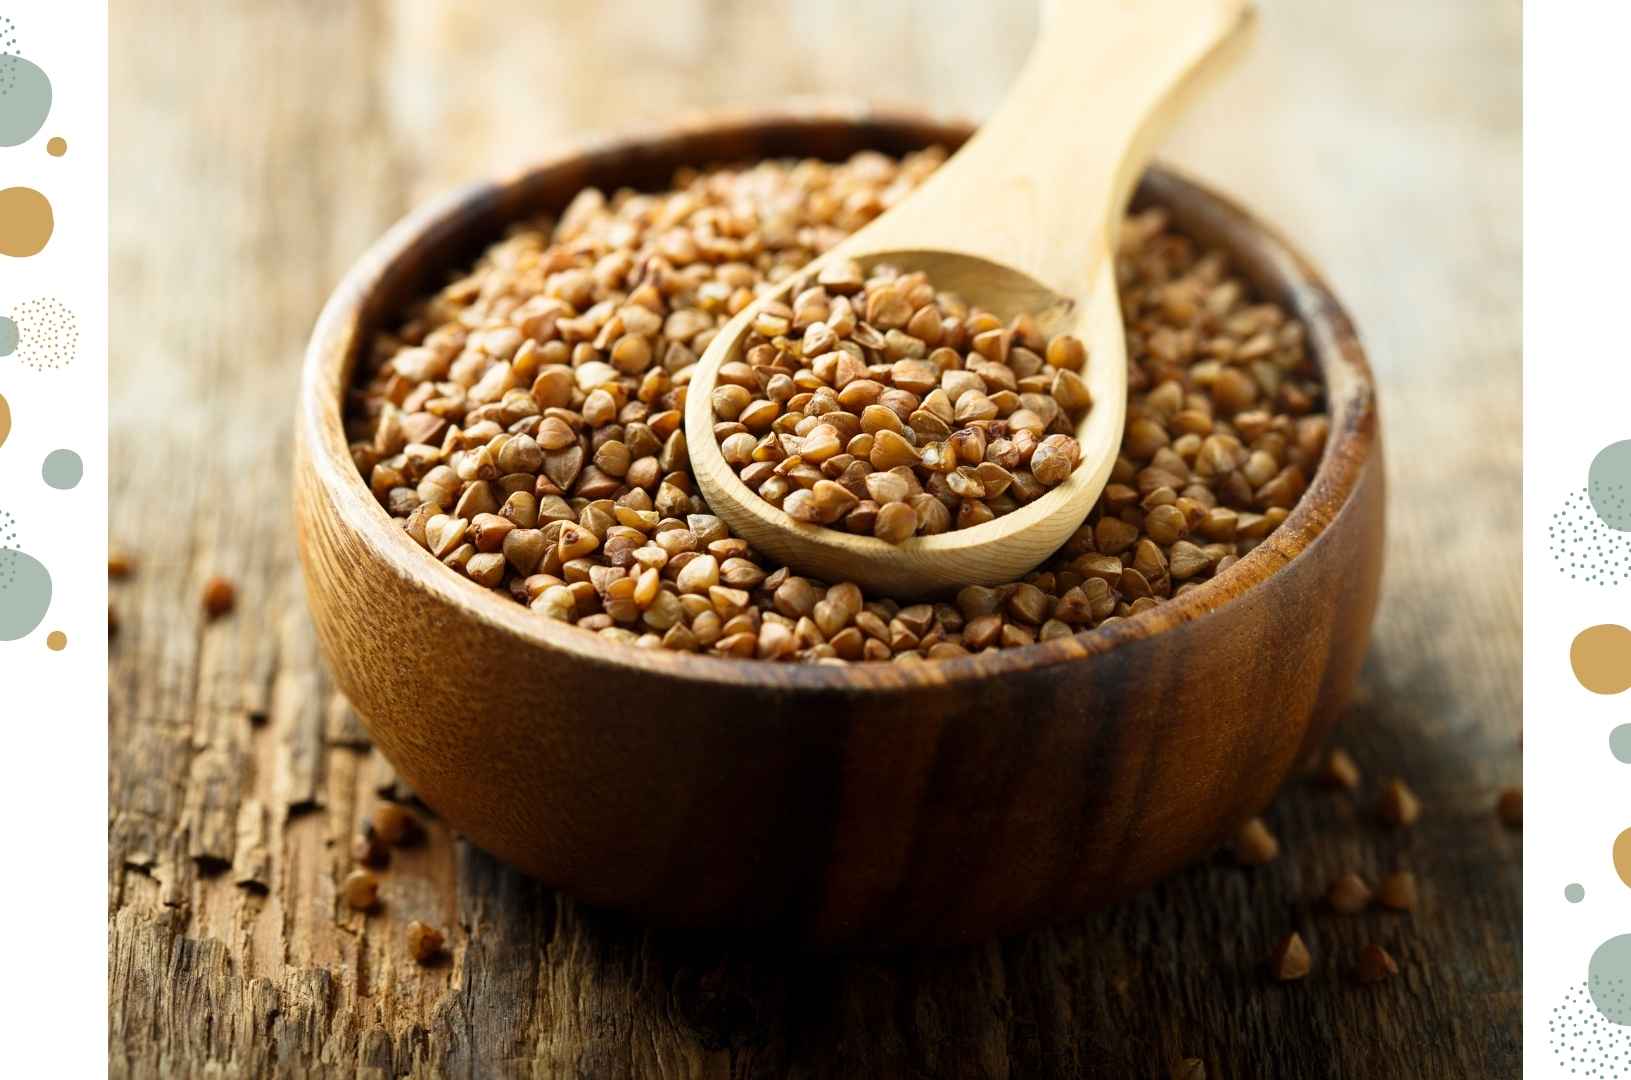 Buckwheat: A substitute for gluten